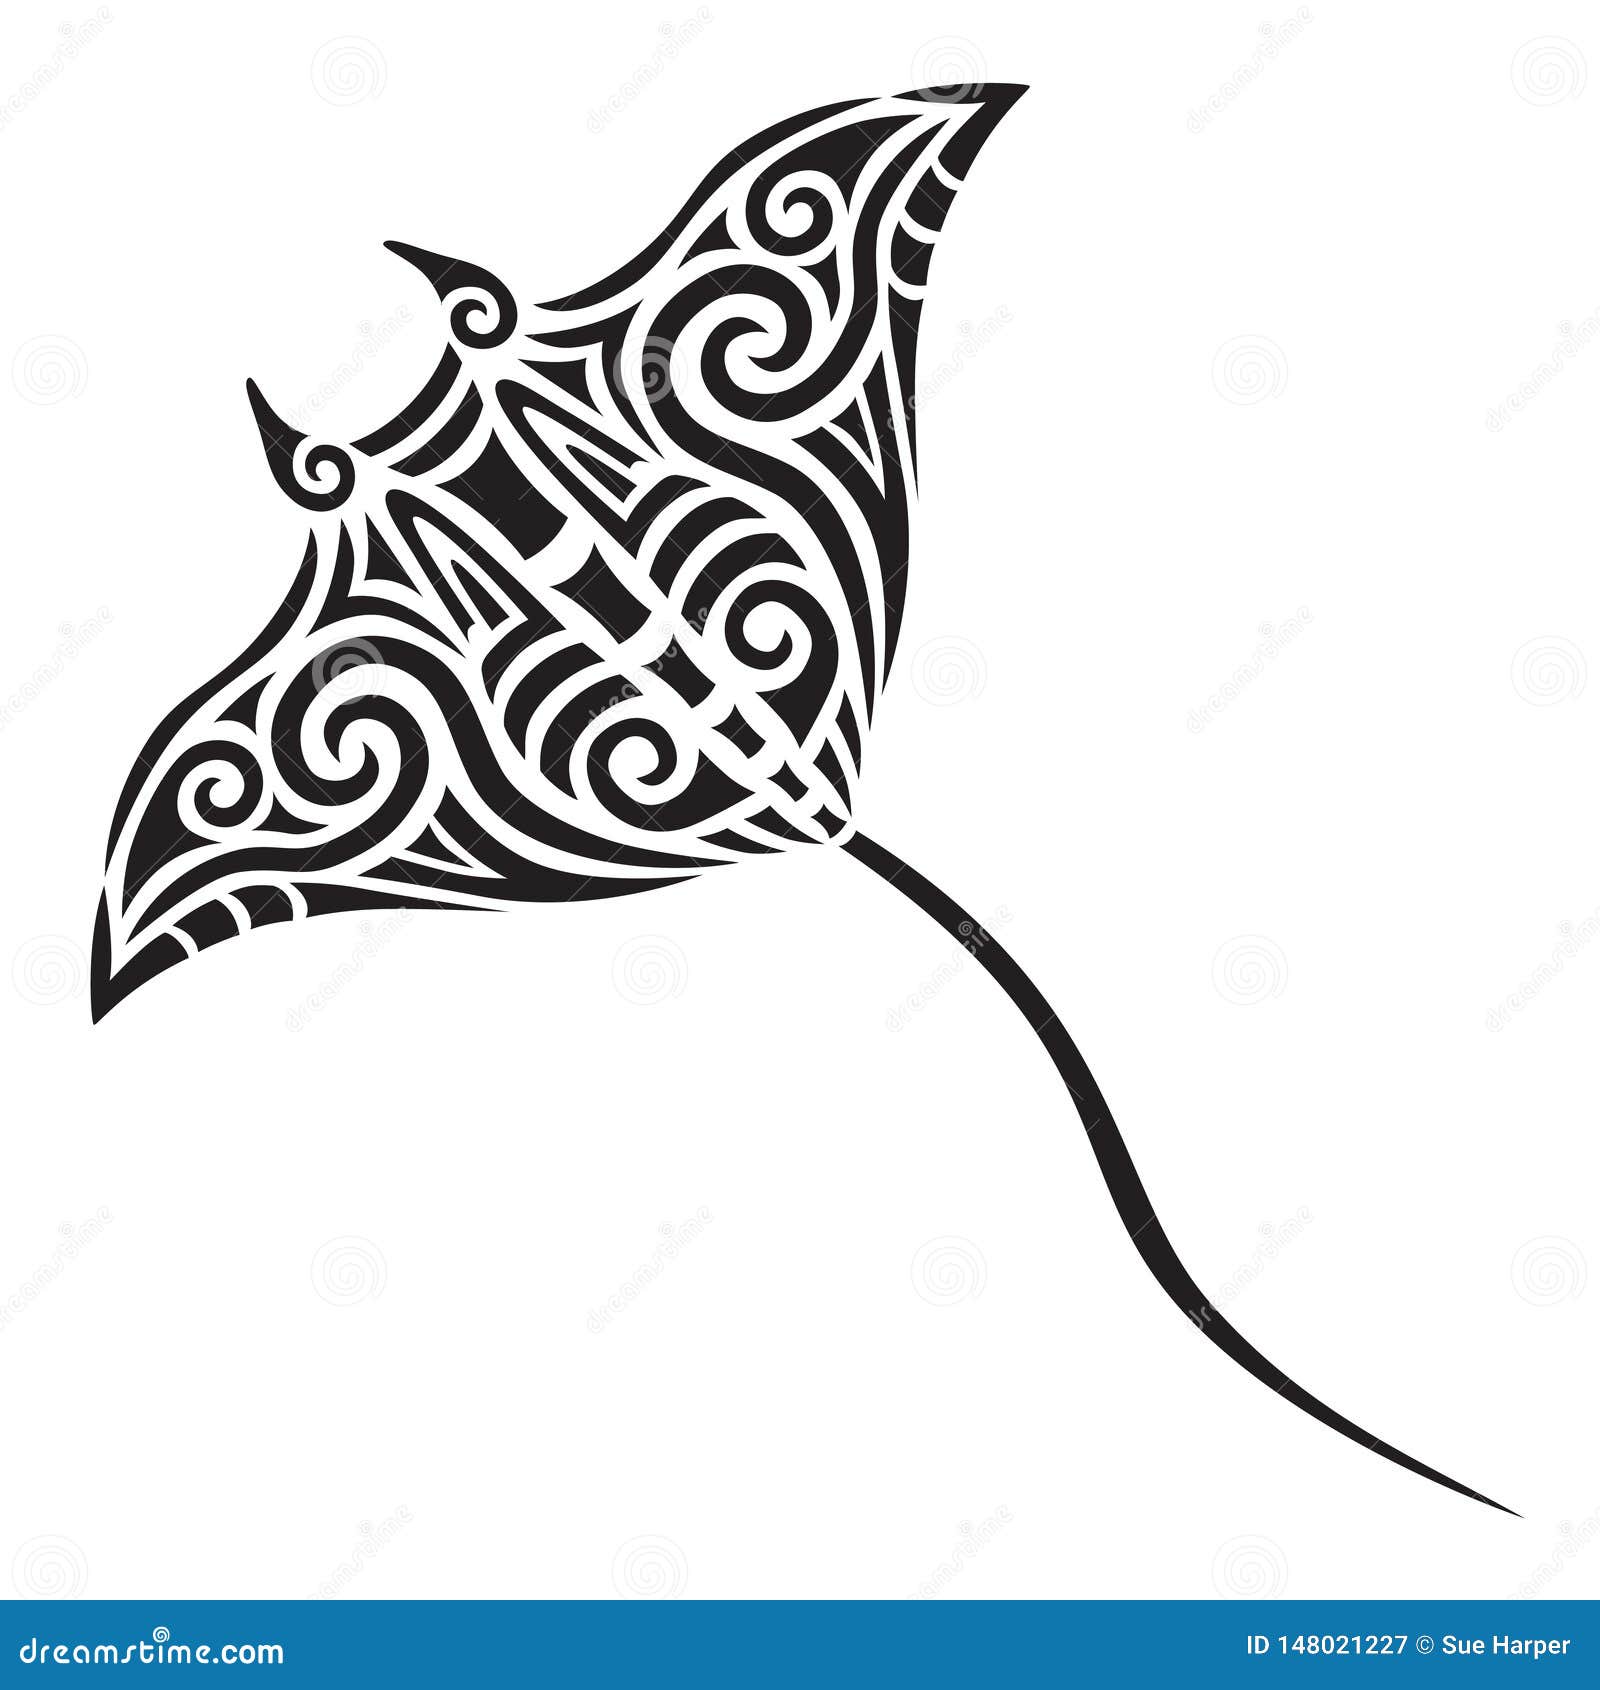 manta ray tattoo tribal stylised maori koru 